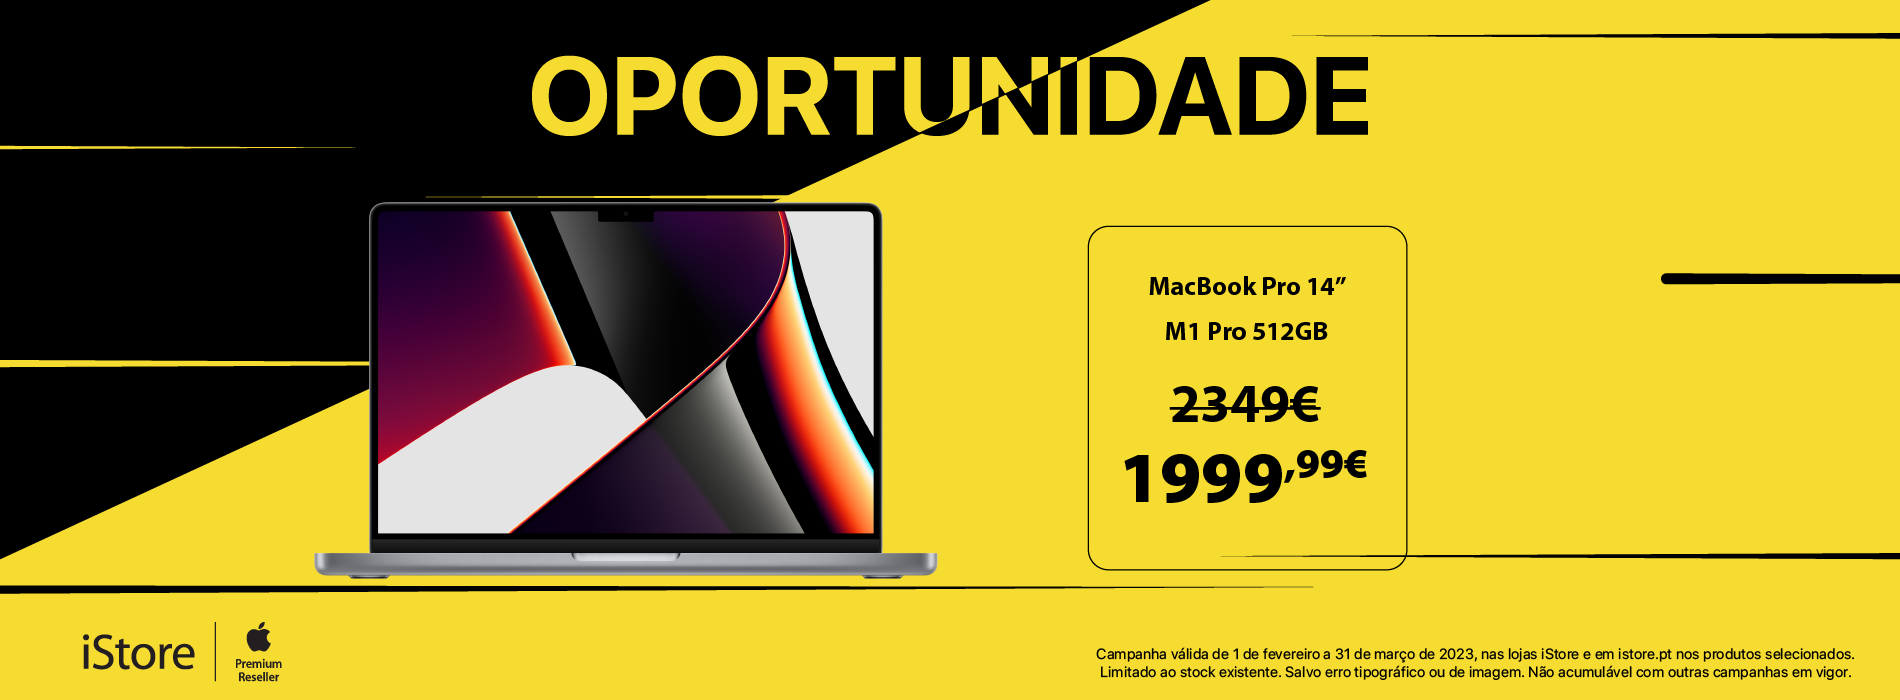 Oportunidade MacBook Pro 14